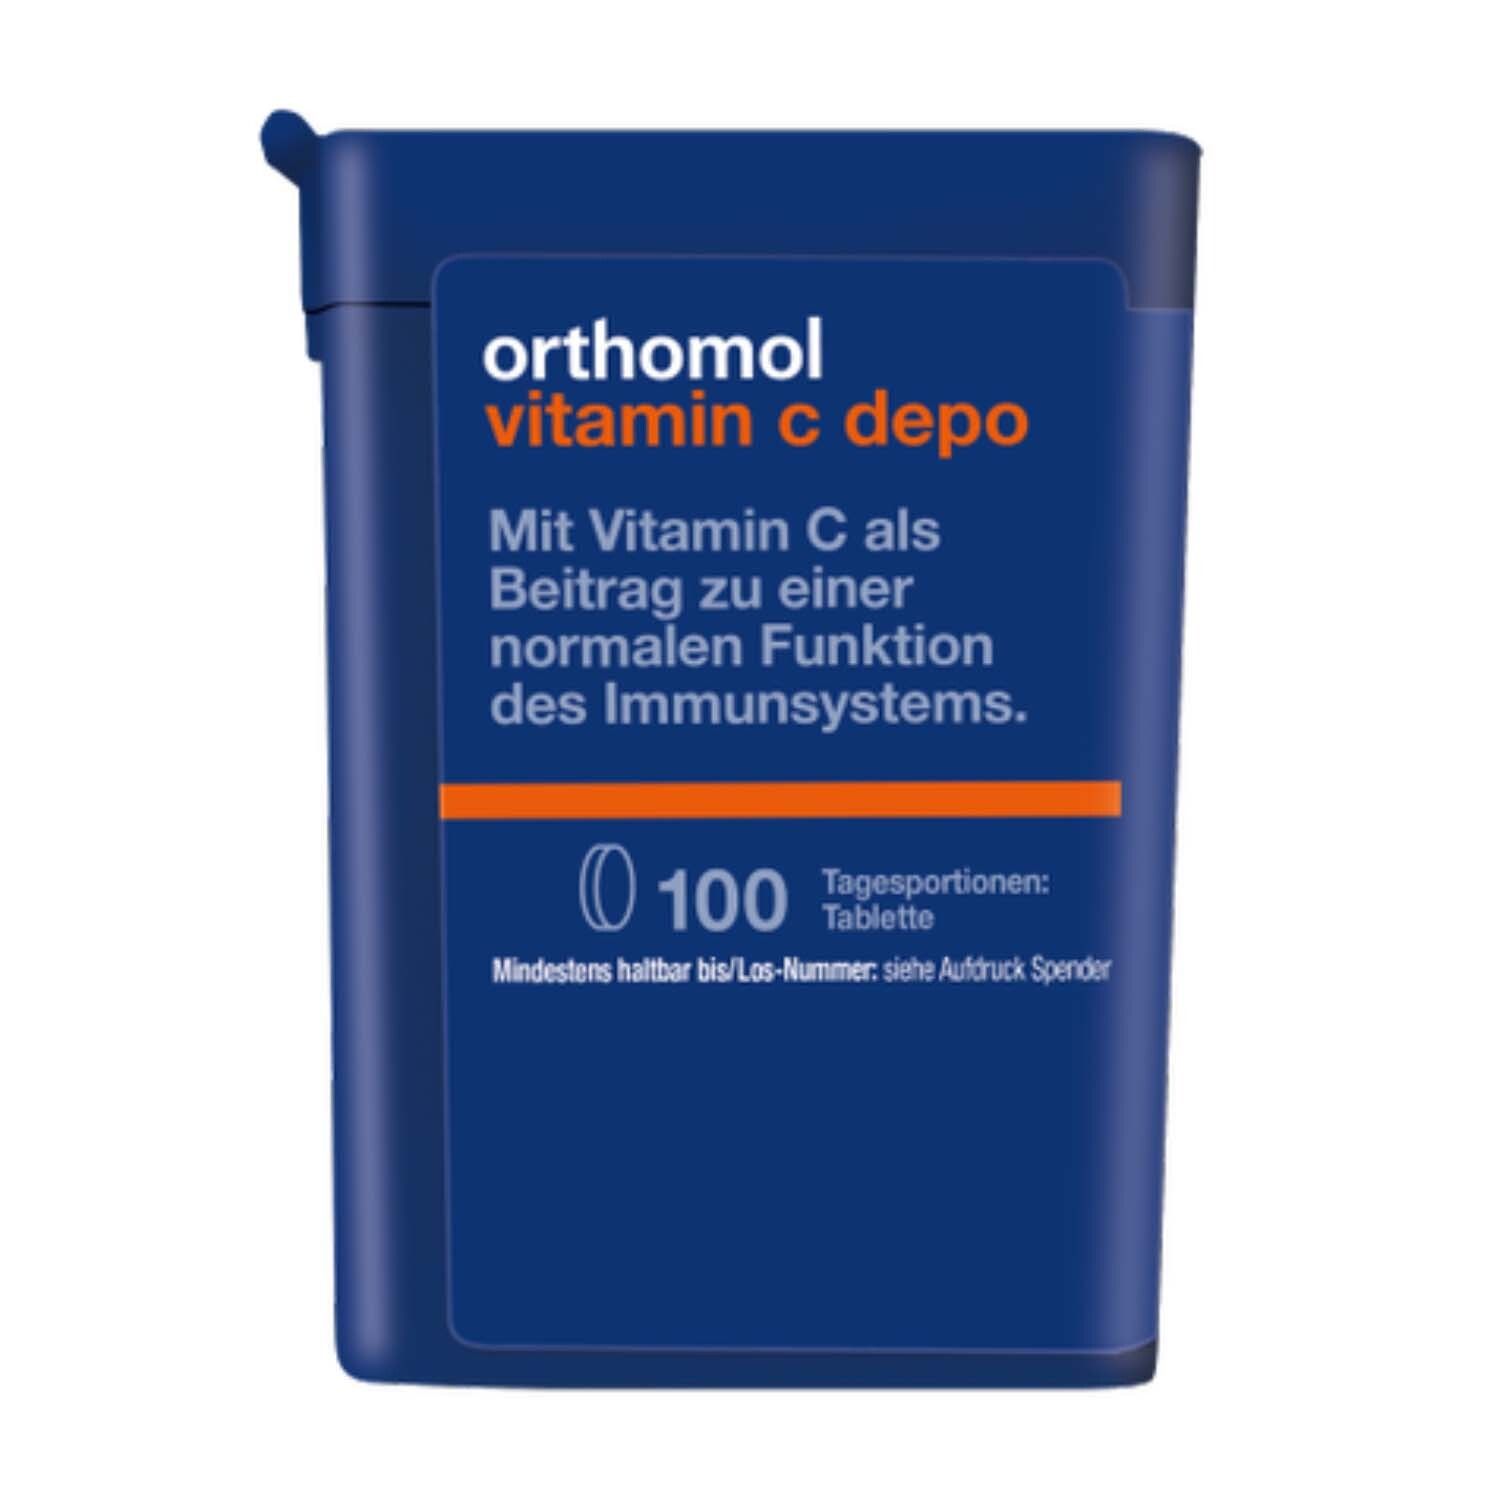 Orthomol Vitamin C depo - Nahrungsergänzungsmittel mit Depot-Wirkung für eine normale Funktion des Immunsystems - Tablet